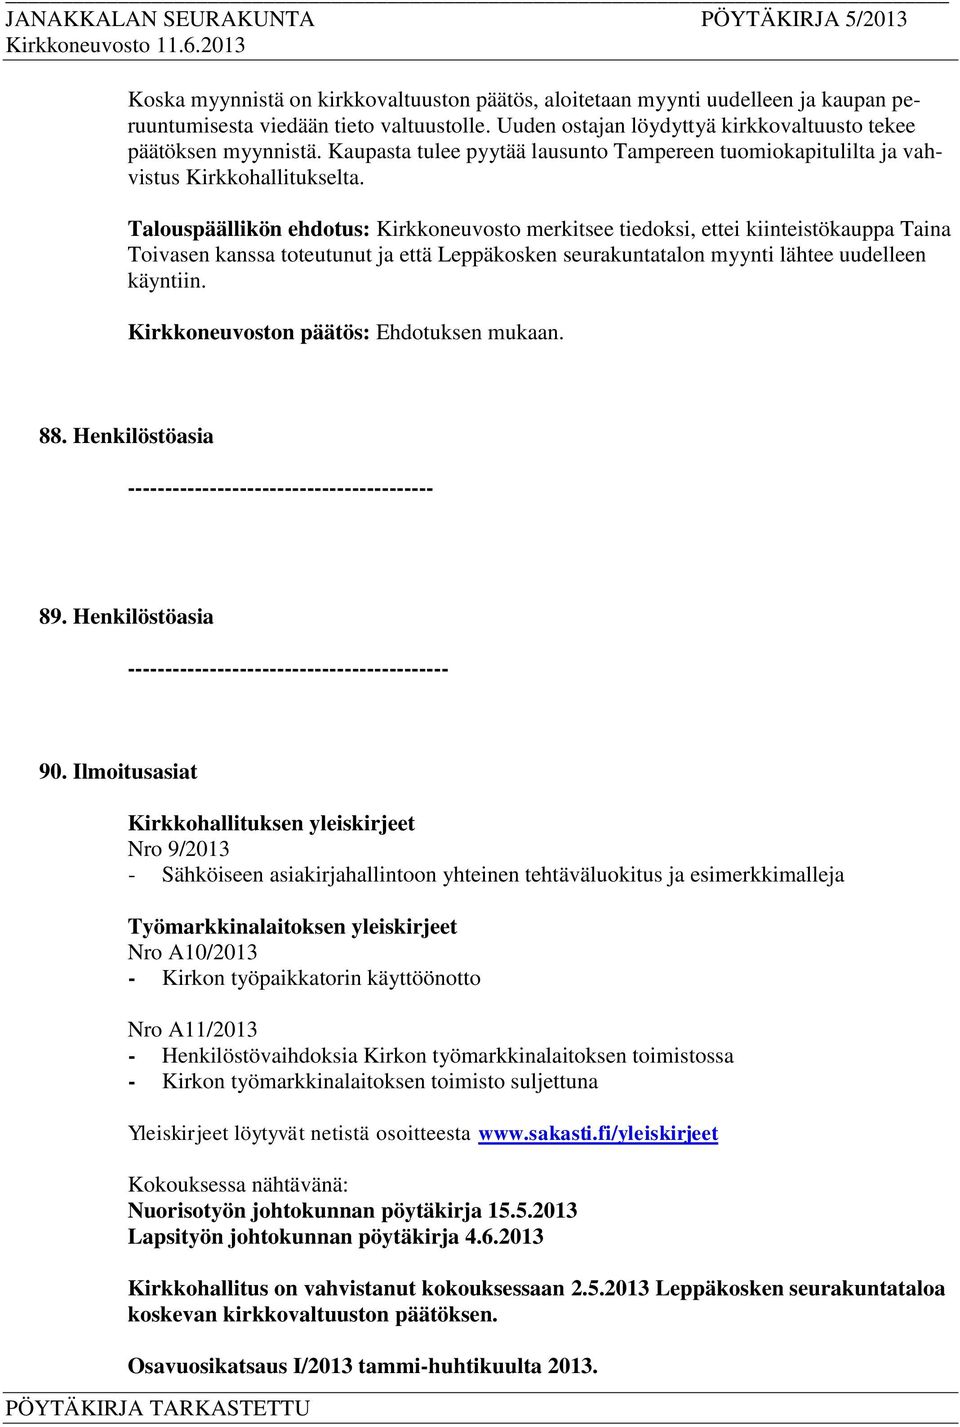 Talouspäällikön ehdotus: Kirkkoneuvosto merkitsee tiedoksi, ettei kiinteistökauppa Taina Toivasen kanssa toteutunut ja että Leppäkosken seurakuntatalon myynti lähtee uudelleen käyntiin. 88.